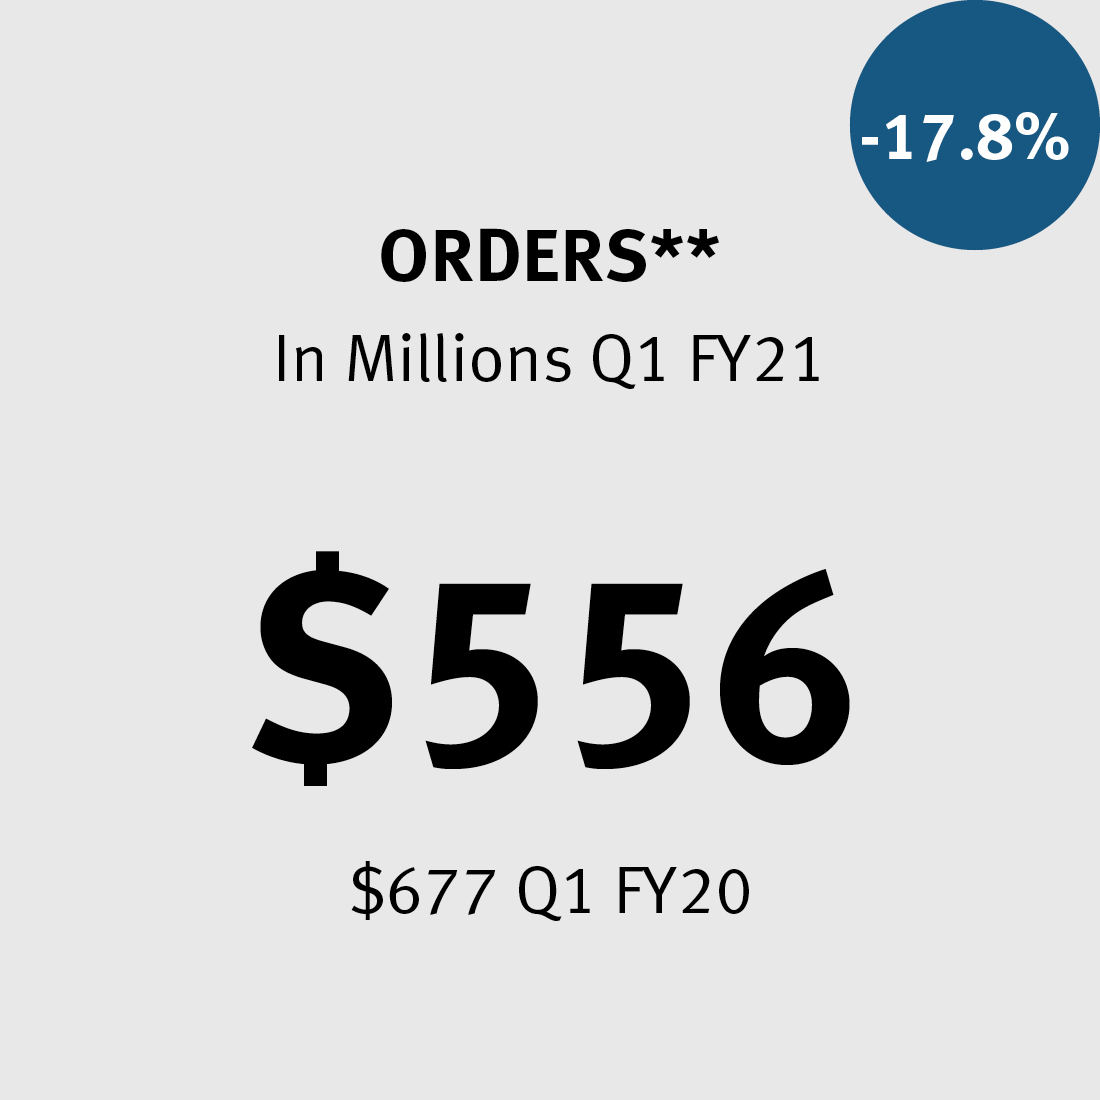 Orders ** $556M ($677M in FY20) -17.8%